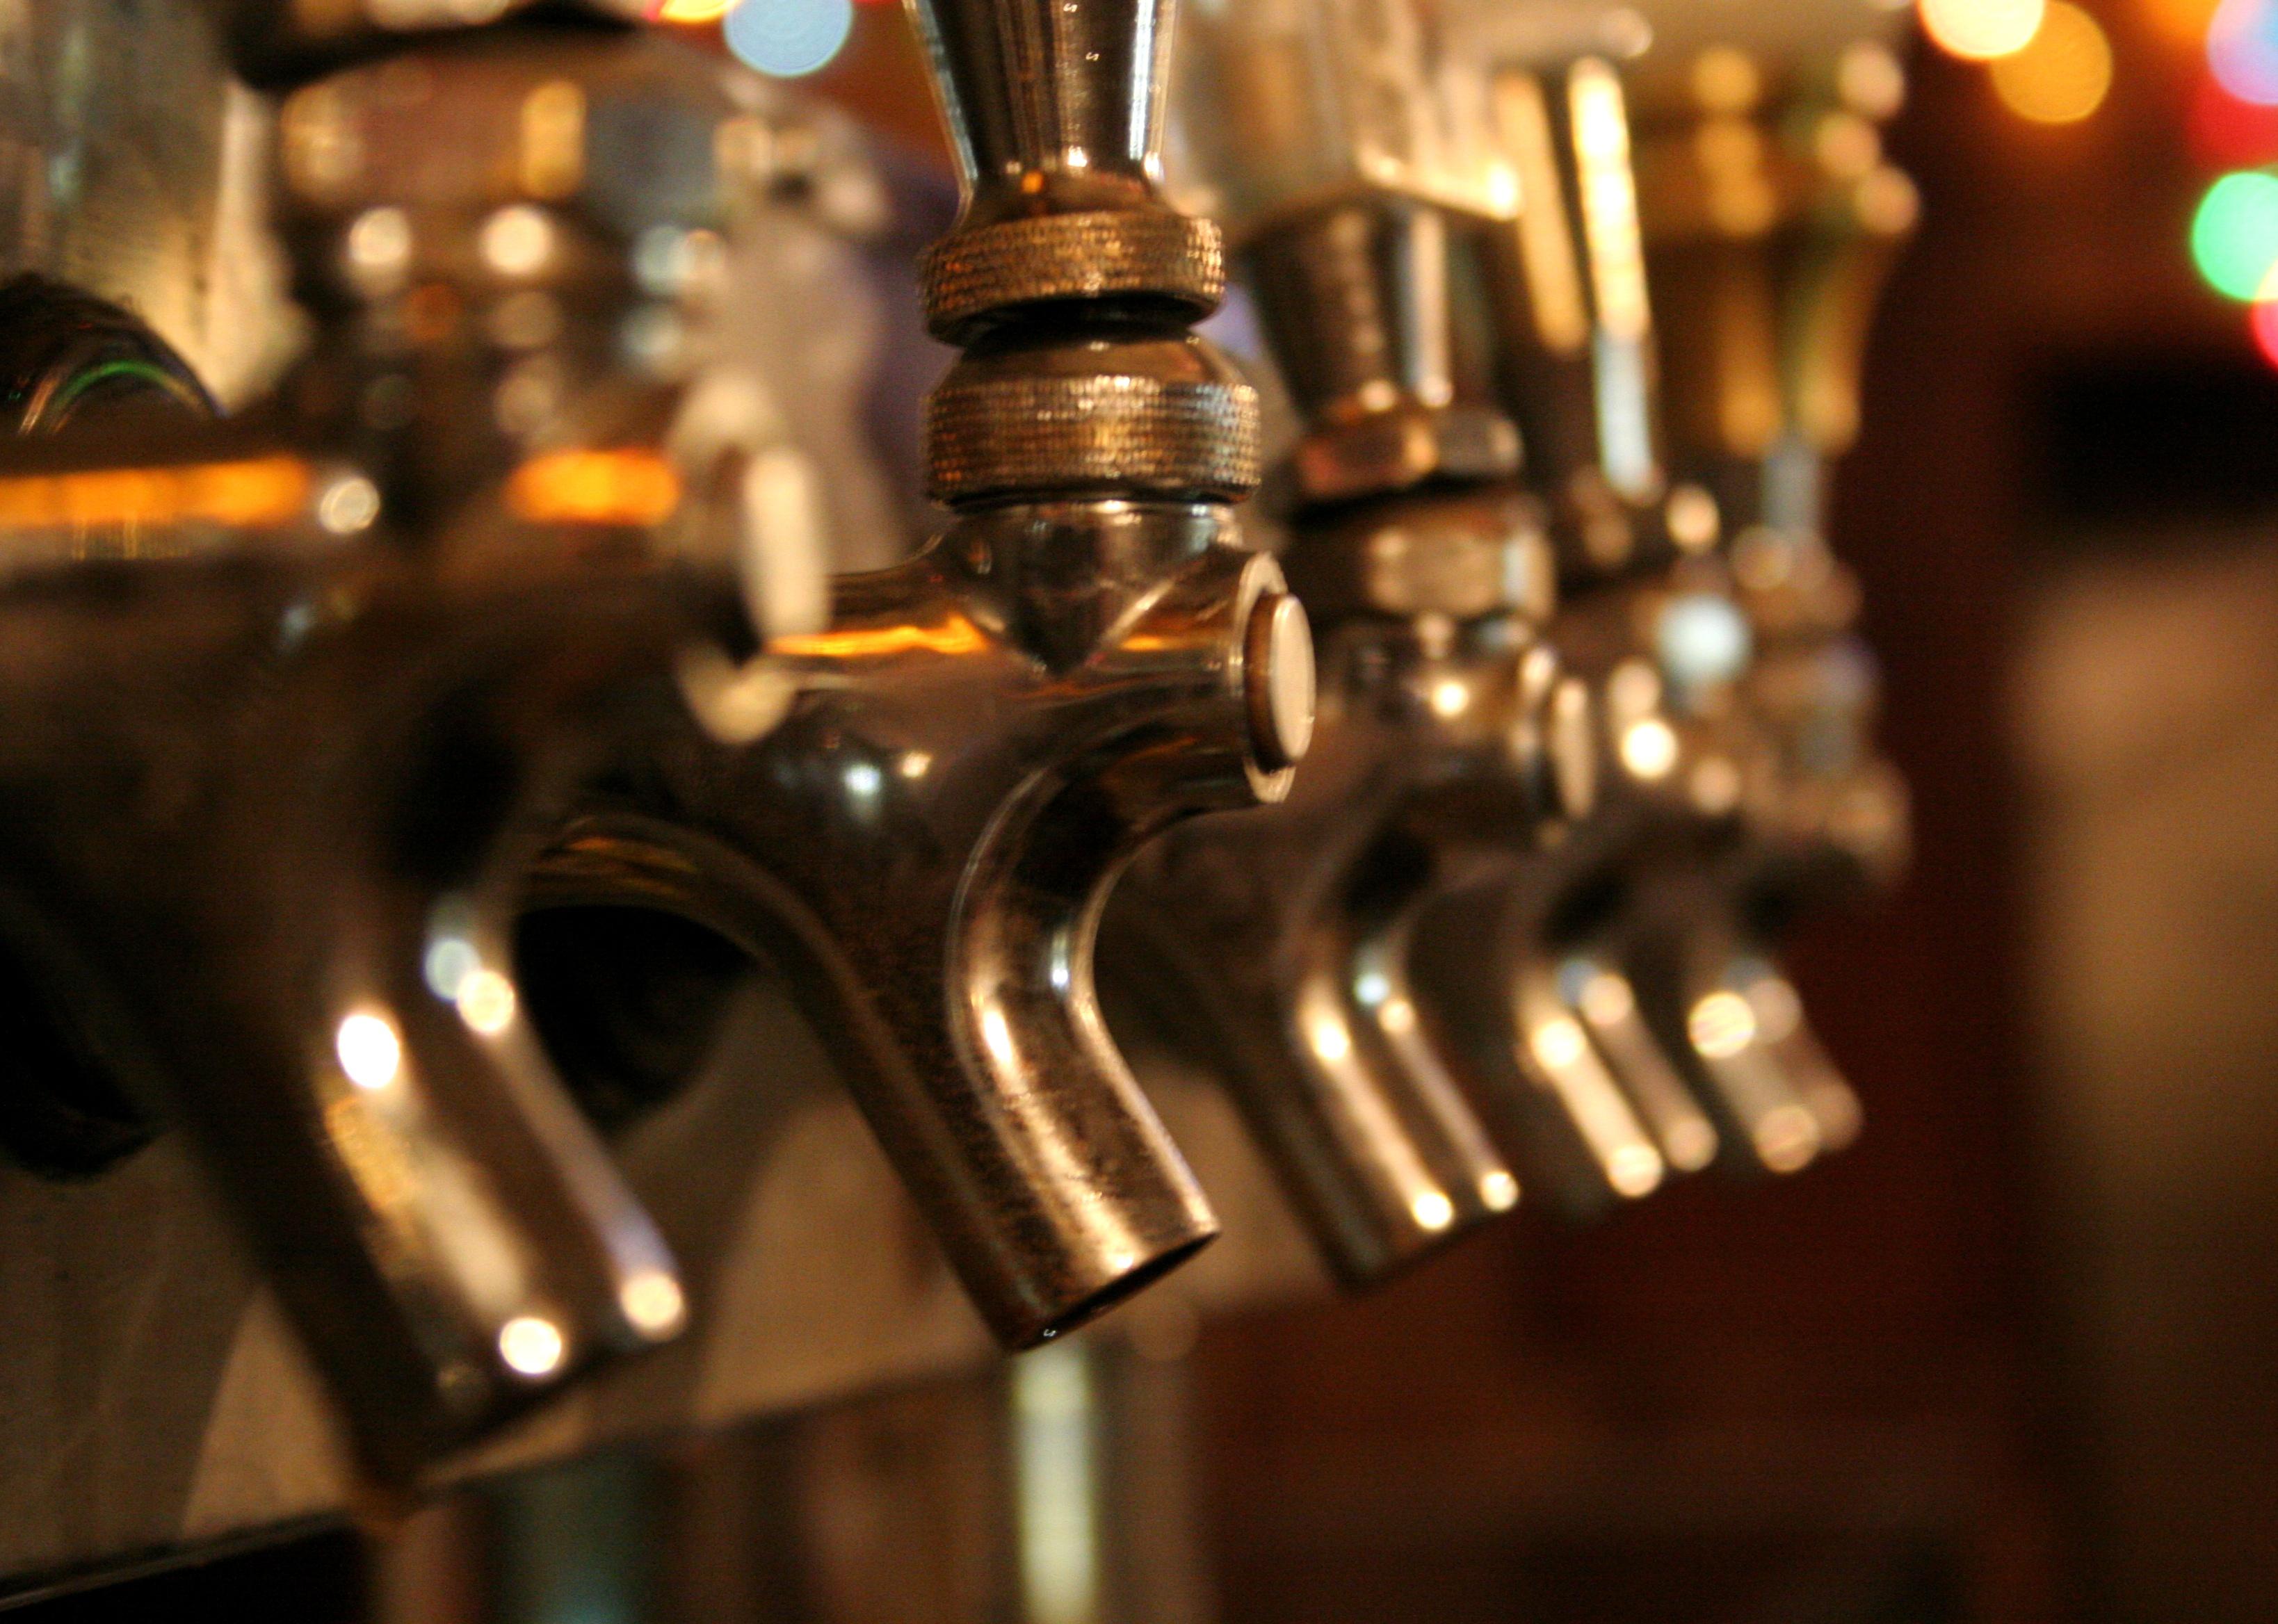 Closeup of taps in a bar